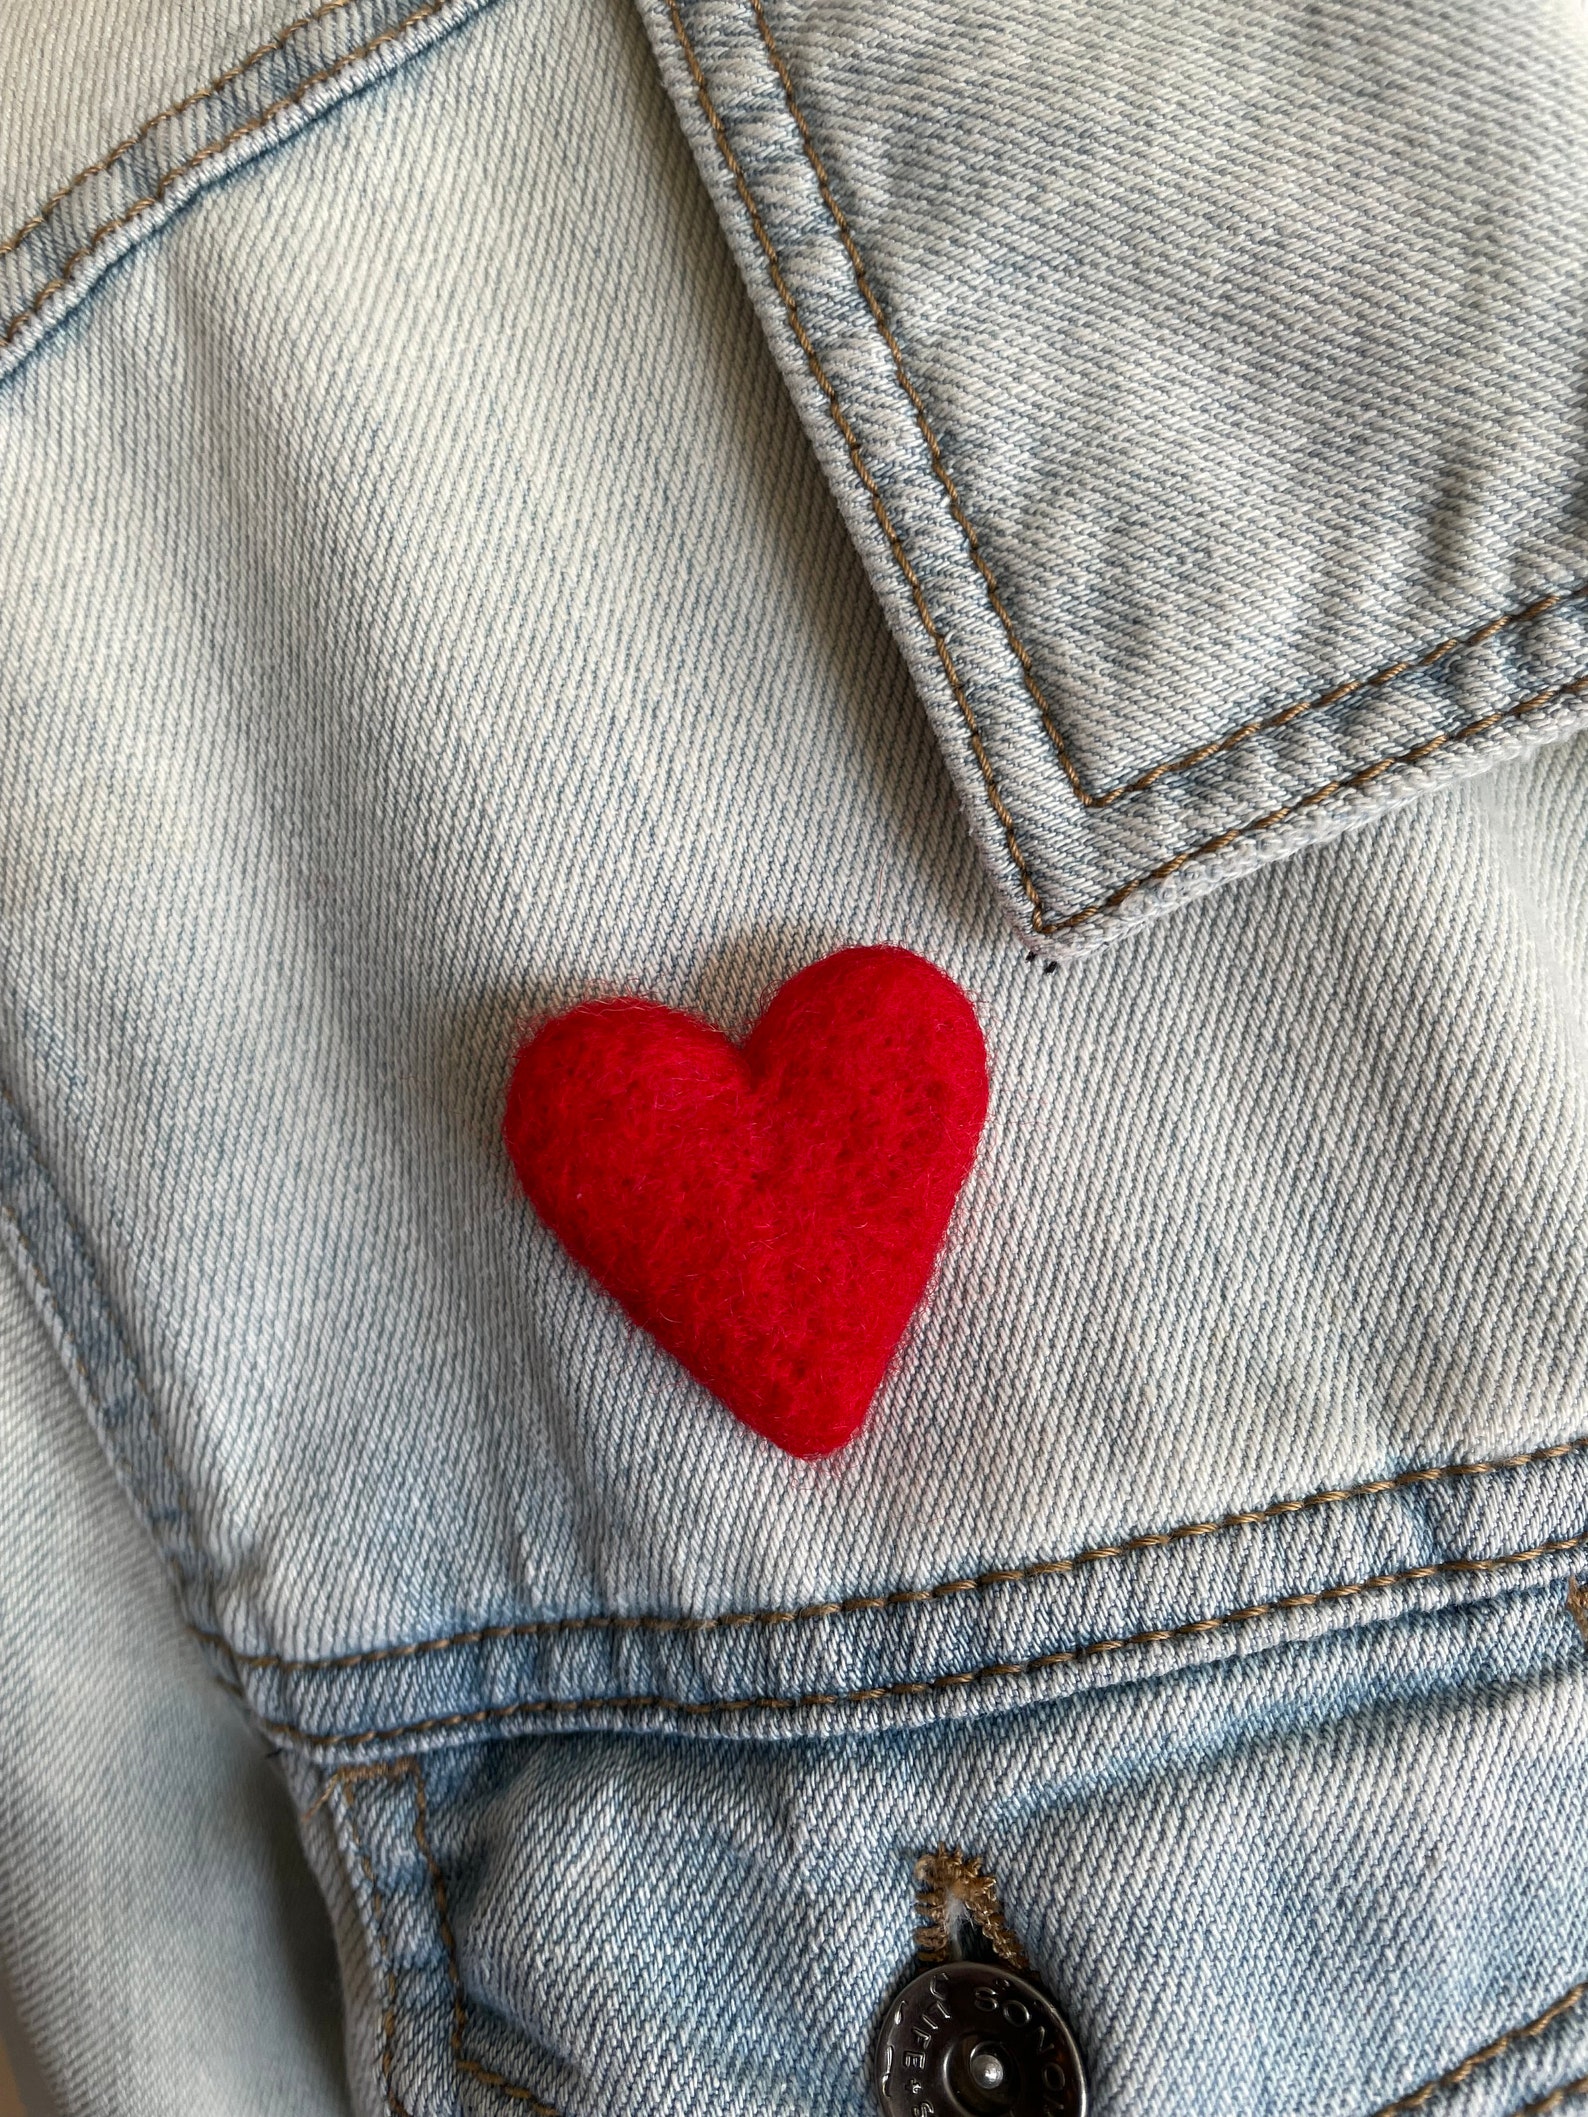 Small Red Heart Pin Lapel Brooch for Weddings Felt Heart - Etsy